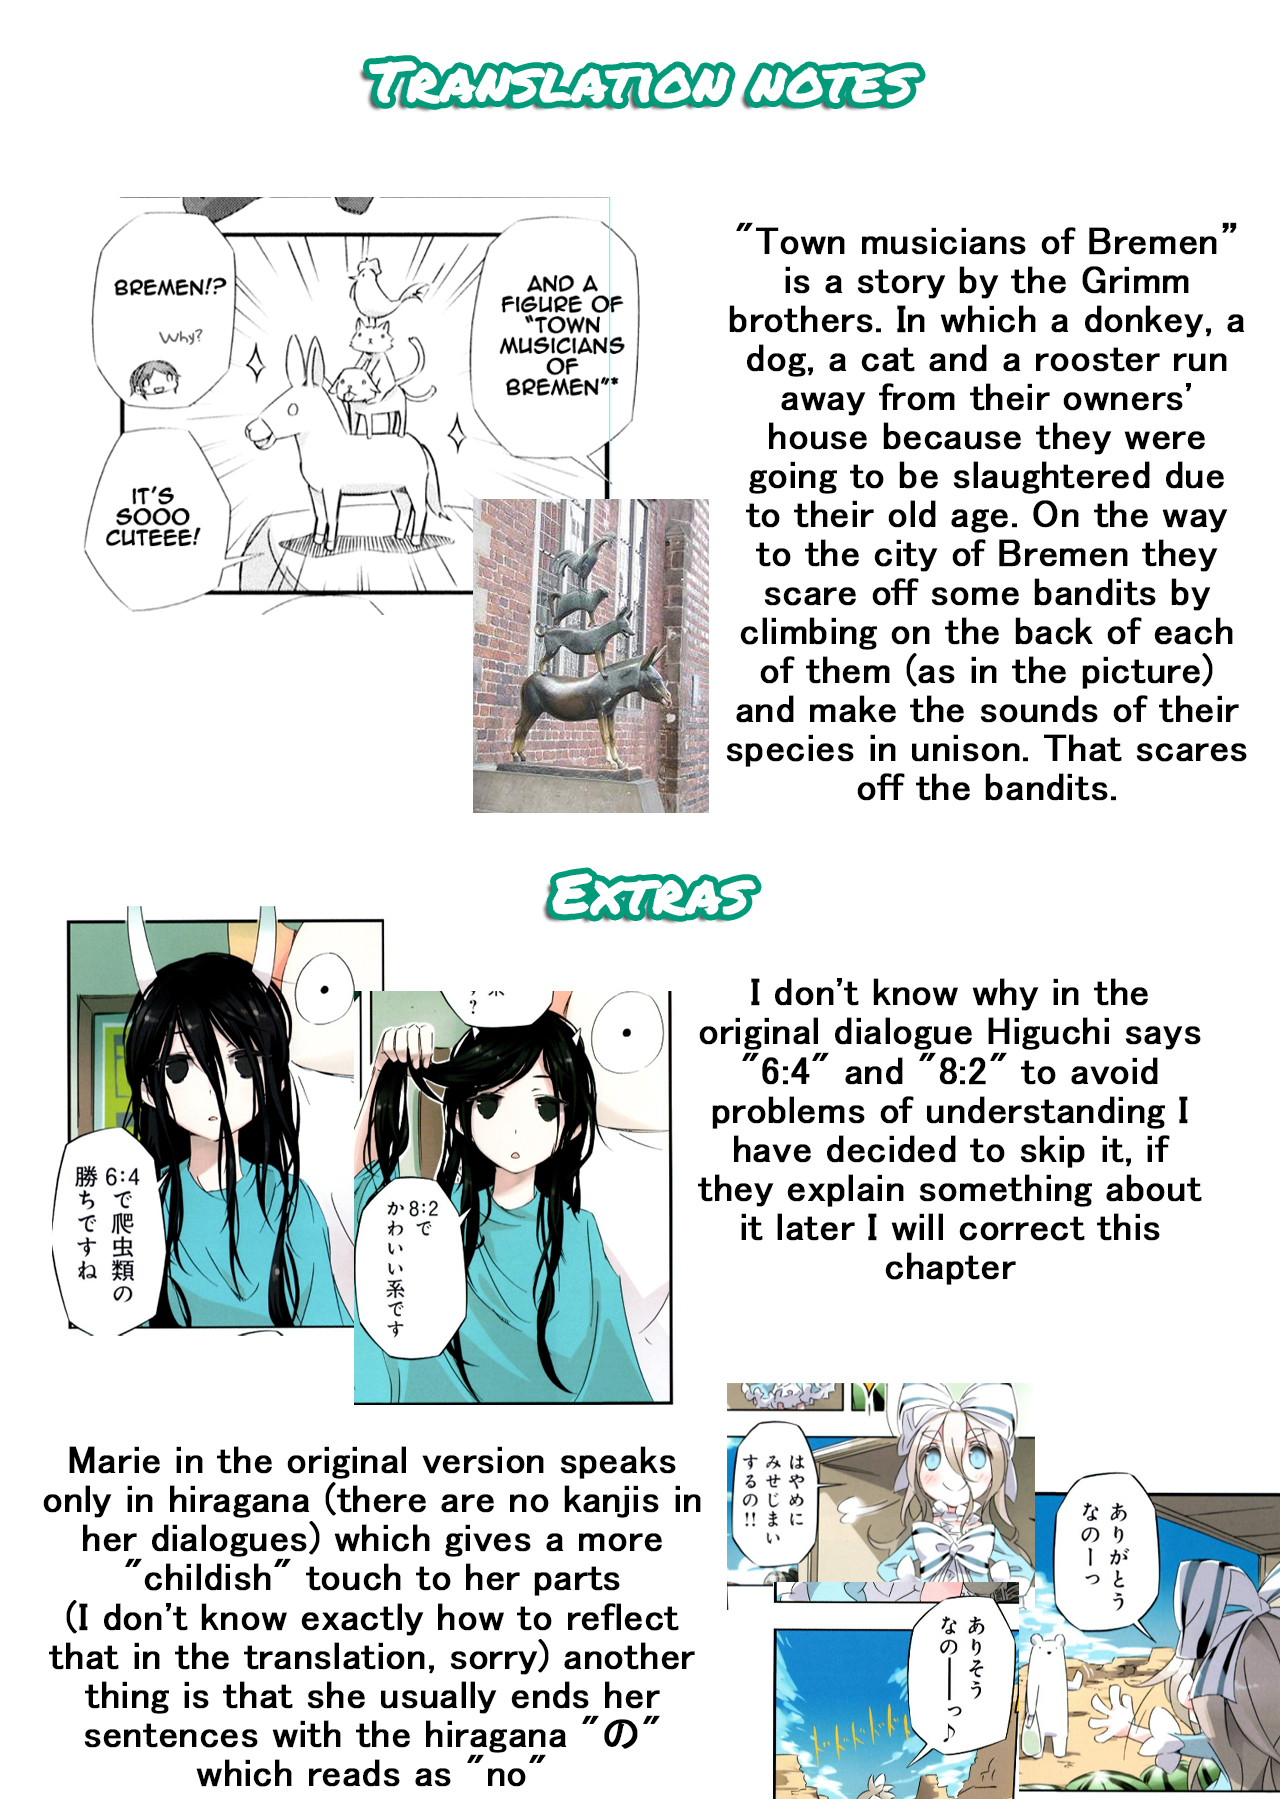 Shirokuma to Fumeikyoku Vol. 1 Ch. 1